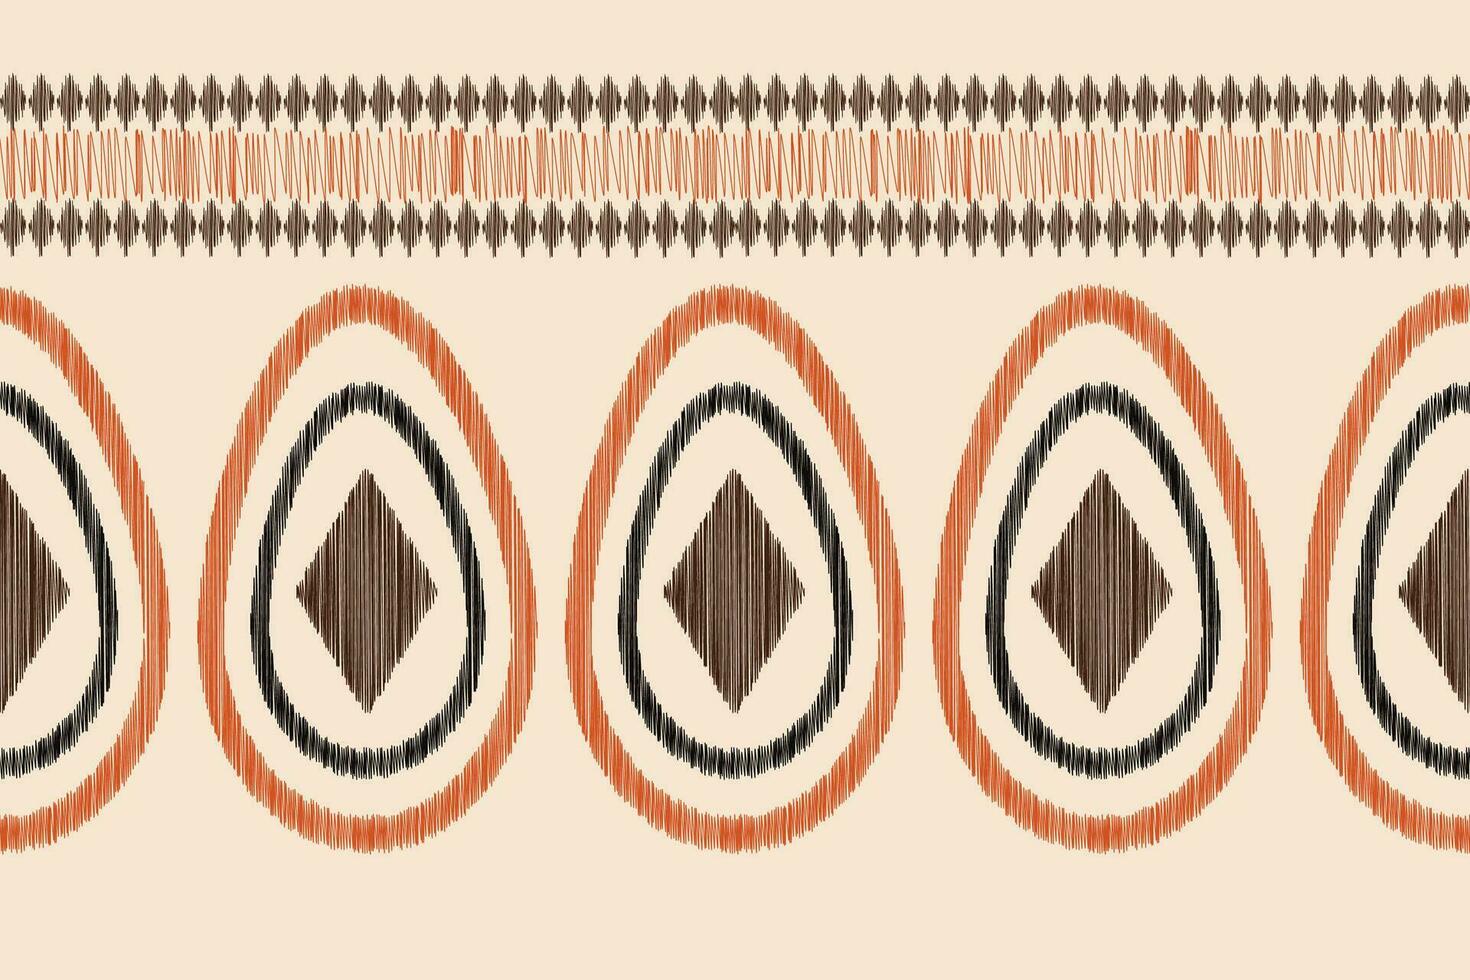 etnisch ikat kleding stof patroon meetkundig stijl.afrikaans ikat borduurwerk etnisch oosters patroon bruin room achtergrond. abstract,vector,illustratie.textuur,kleding,lijst,decoratie,tapijt,motief. vector